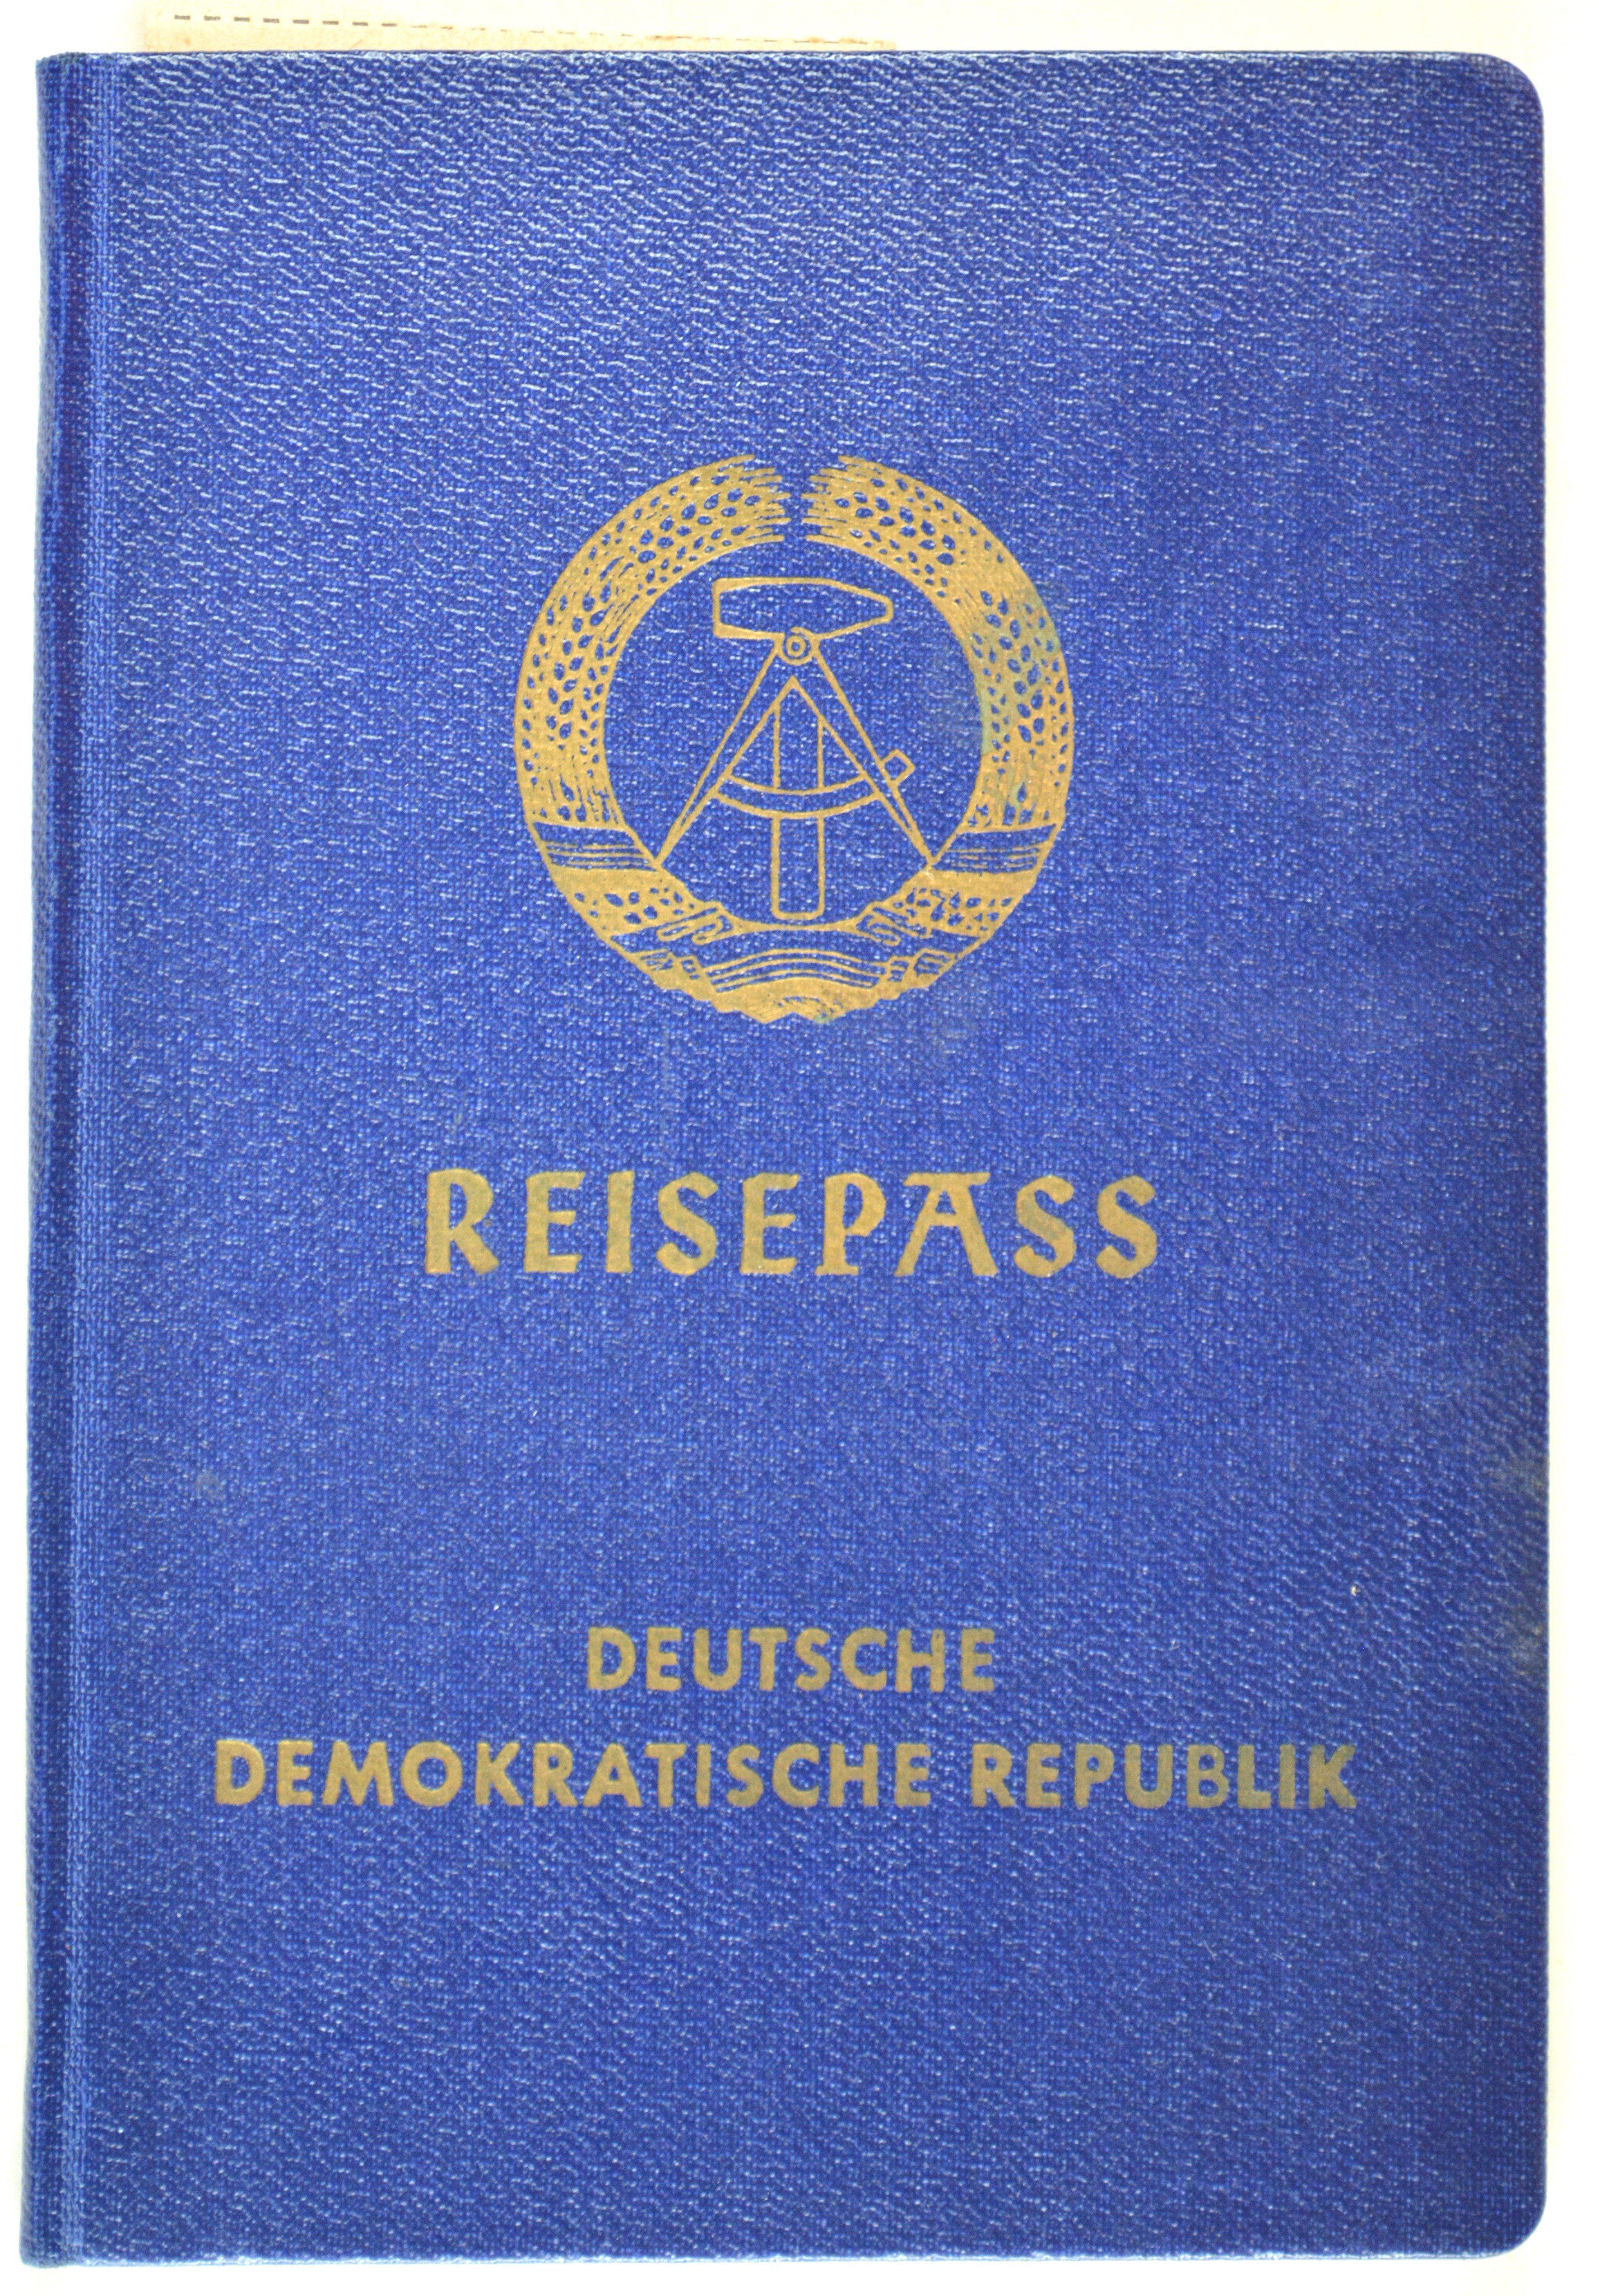 Reisepass der DDR von Gerhard Freimark (DDR Geschichtsmuseum im Dokumentationszentrum Perleberg CC BY-SA)